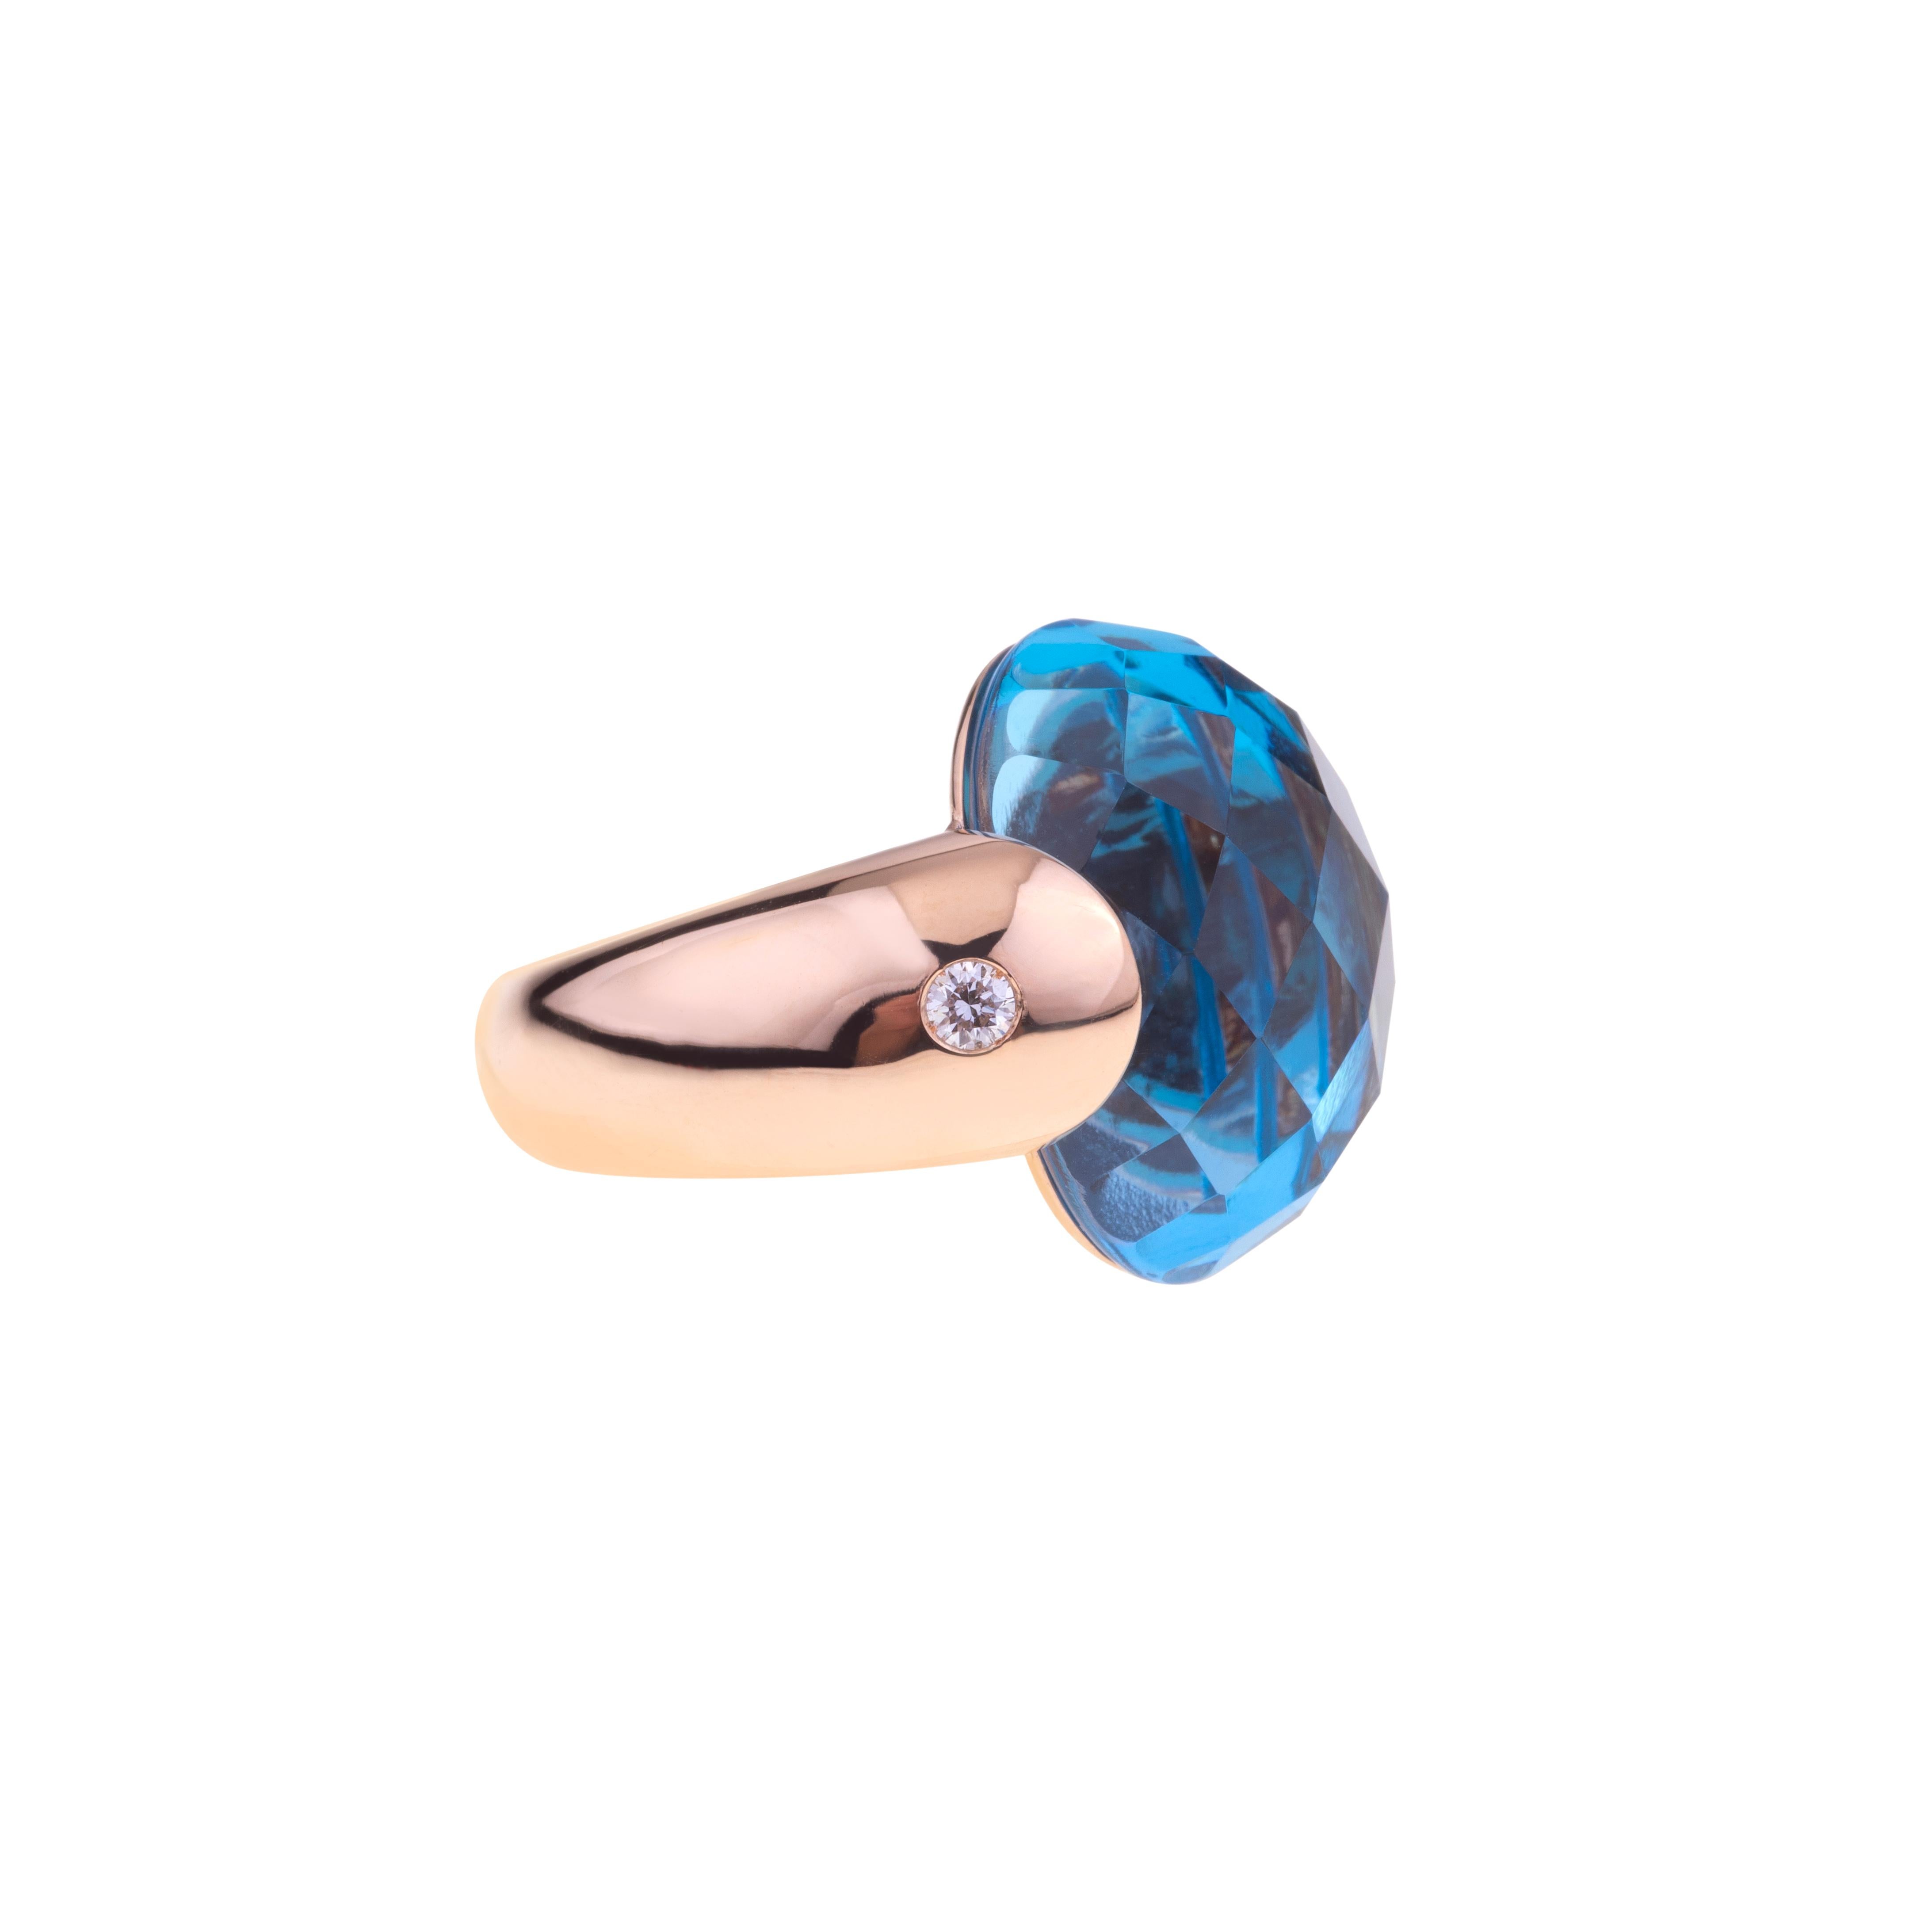 Embrace Collection'S von Angeletti. Ring aus Roségold mit Blautopas und Diamanten.
Ikonisches Umarmungsmodell, entworfen und hergestellt in Rom.
Auf der Seite des Blautopas (ct.18.06) befinden sich zwei Diamanten  ct. 0.16. Das Goldgewicht beträgt